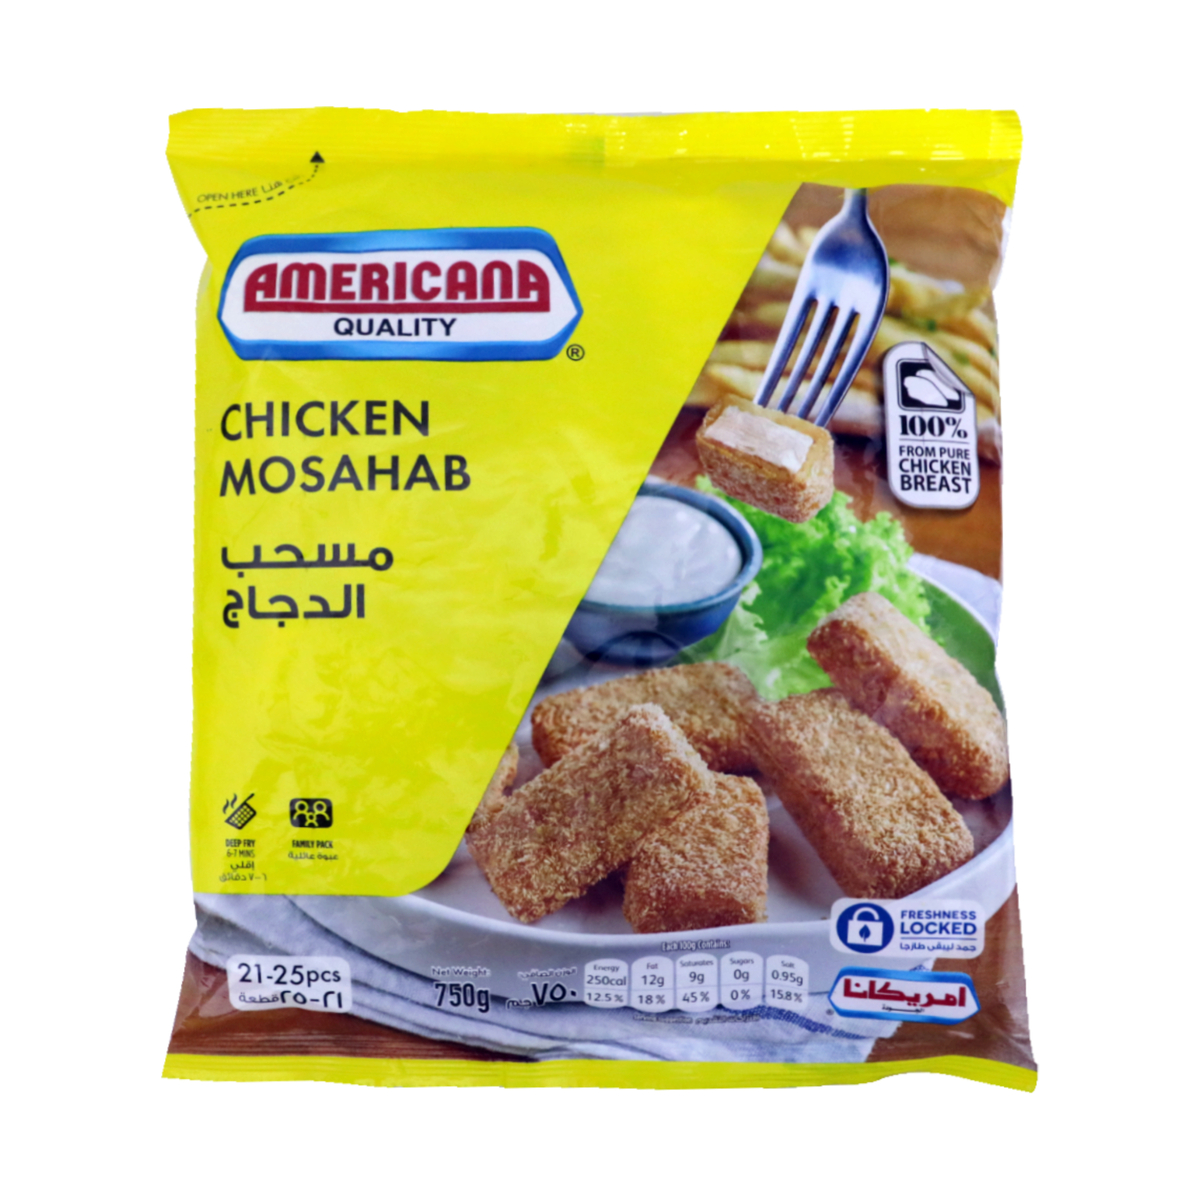 Buy Americana Chicken Mosahab 750g Online at Best Price | Nuggets | Lulu KSA in Saudi Arabia